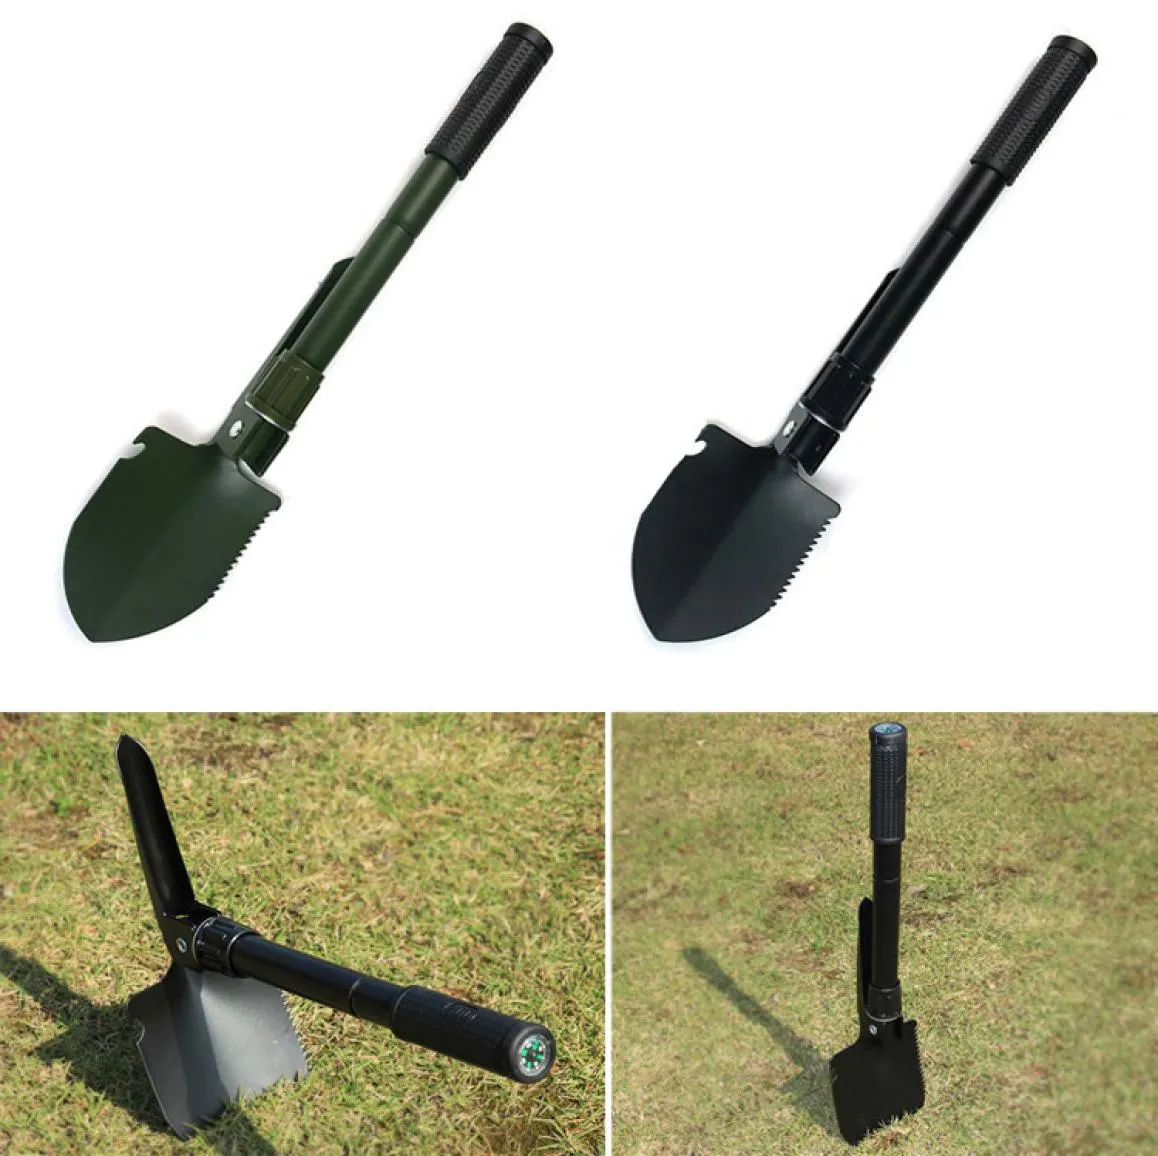 Najnowszy wojskowy przenośna składana łopata przetrwania łopatka Trowel Dibble Garden Camping Outdoor Emergency Calaplegable Tool Shop x T20